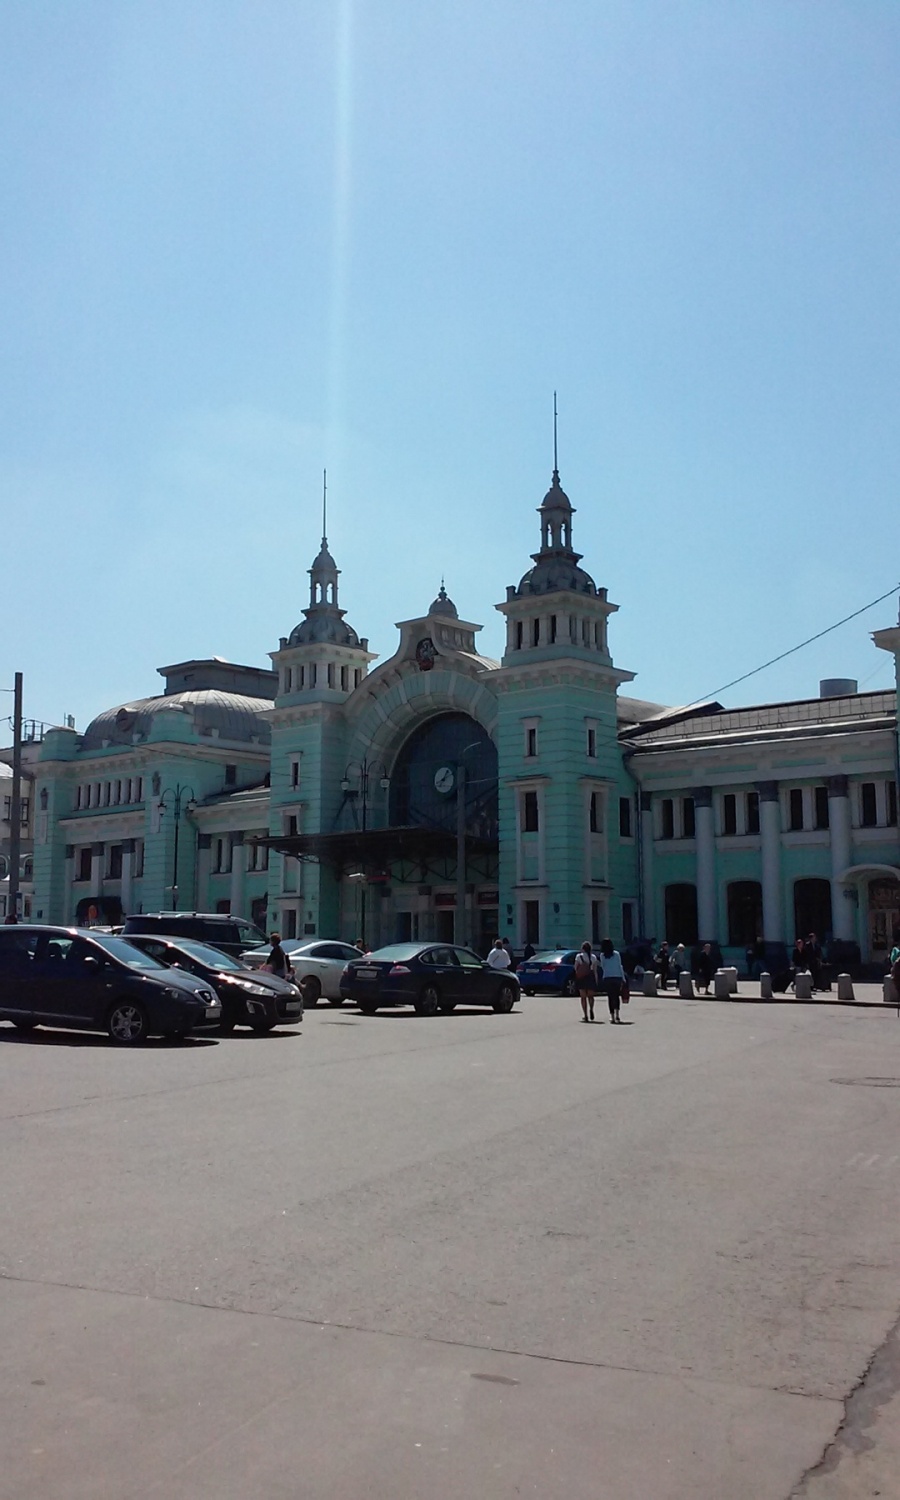 Белорусский вокзал - «Белорусский жд-вокзал - один из старейших вокзалов Москвы»